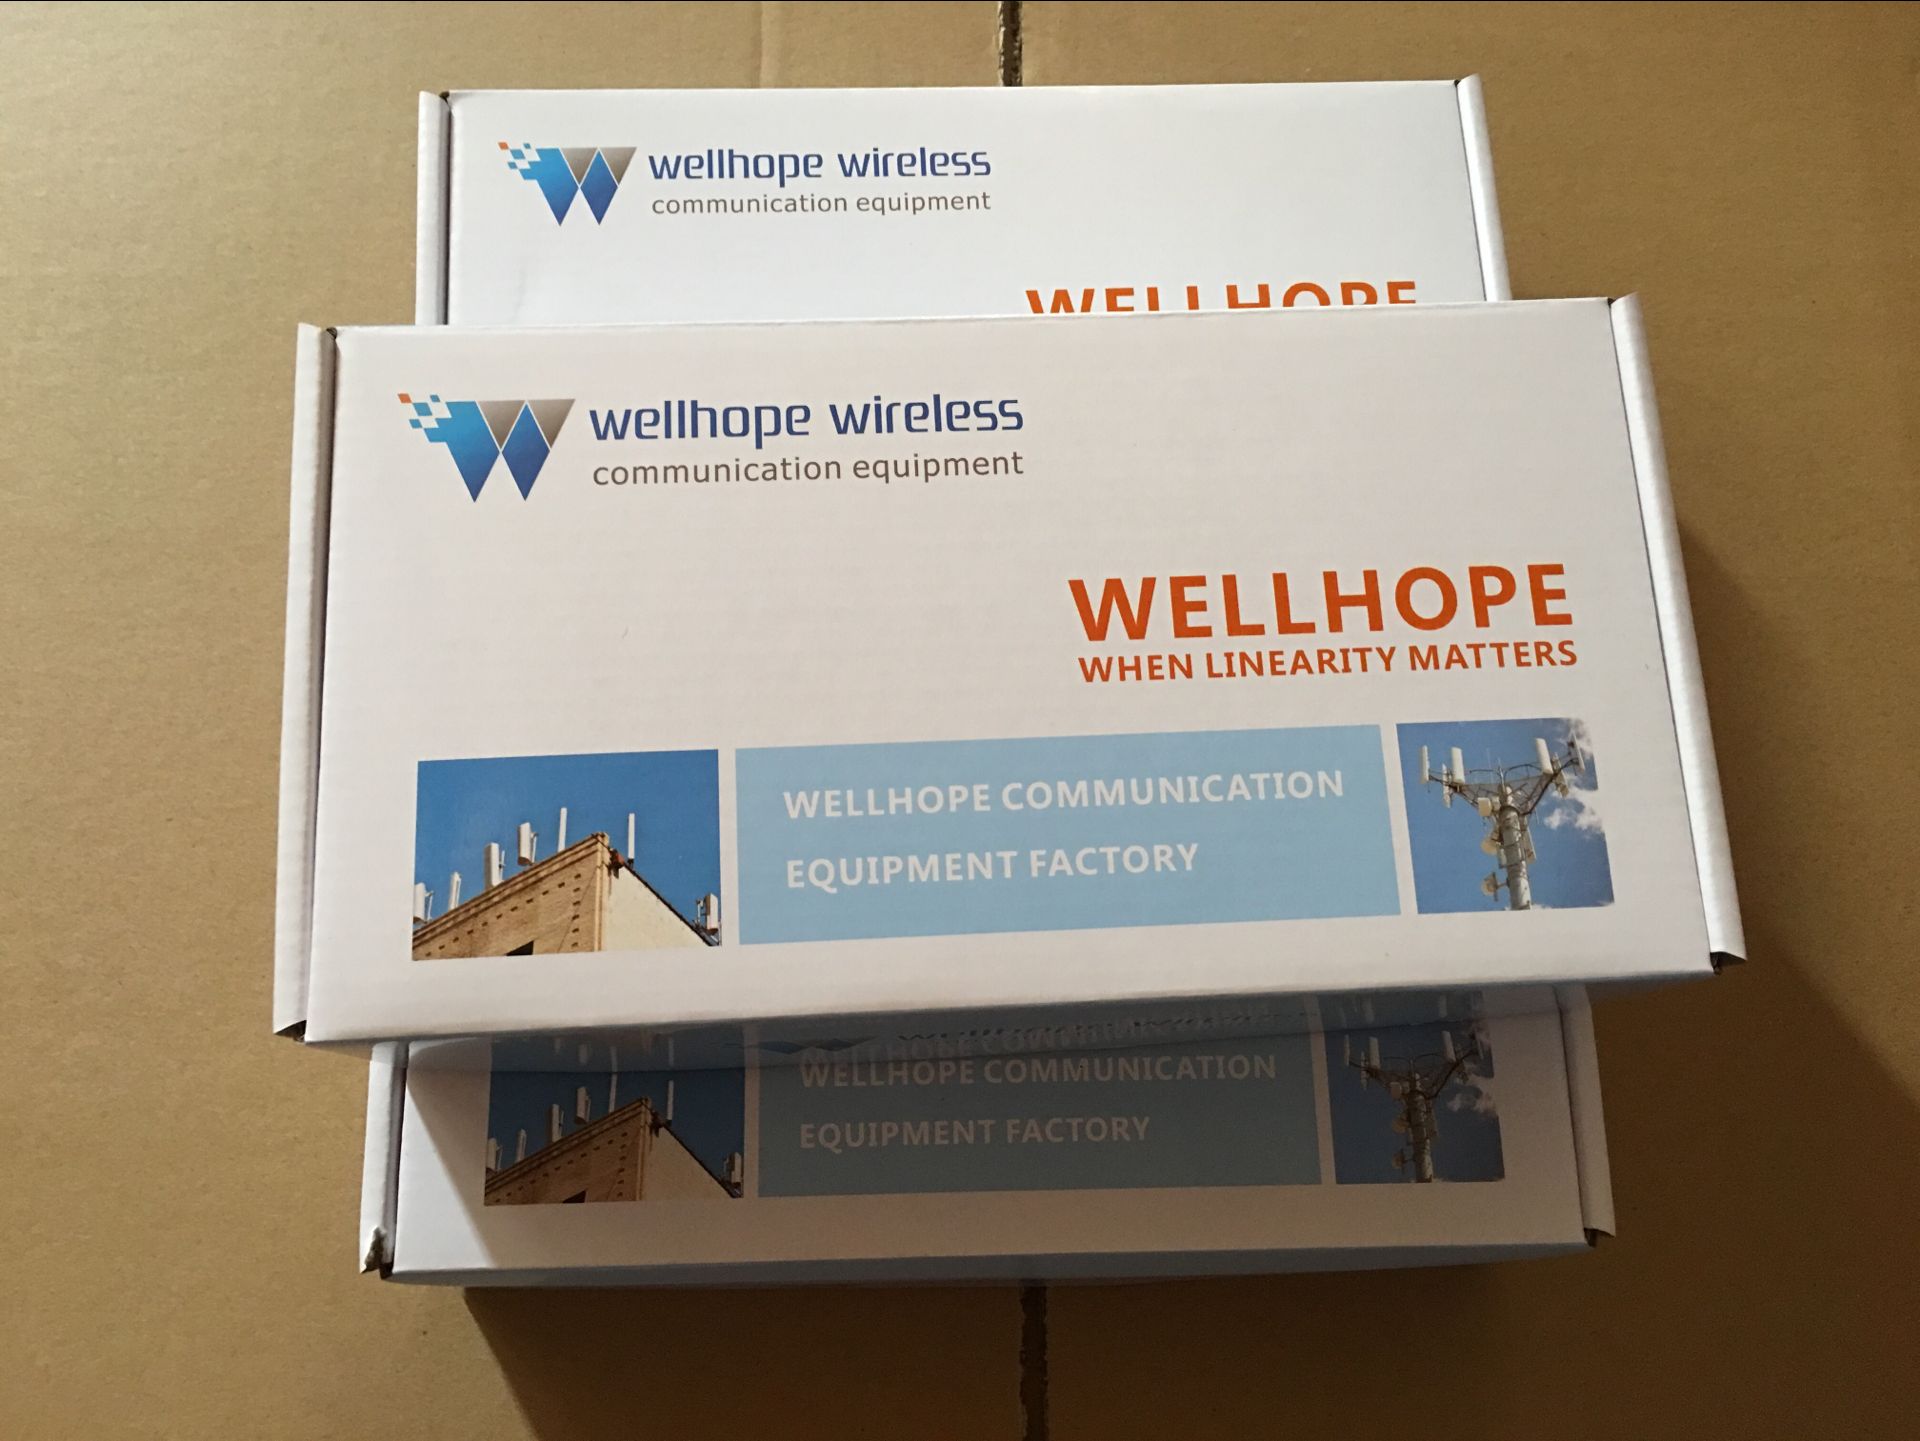  2017/7/26 antenne sans fil 2000pcs 2.4GHz de wellhope WH-2.4GHz-02